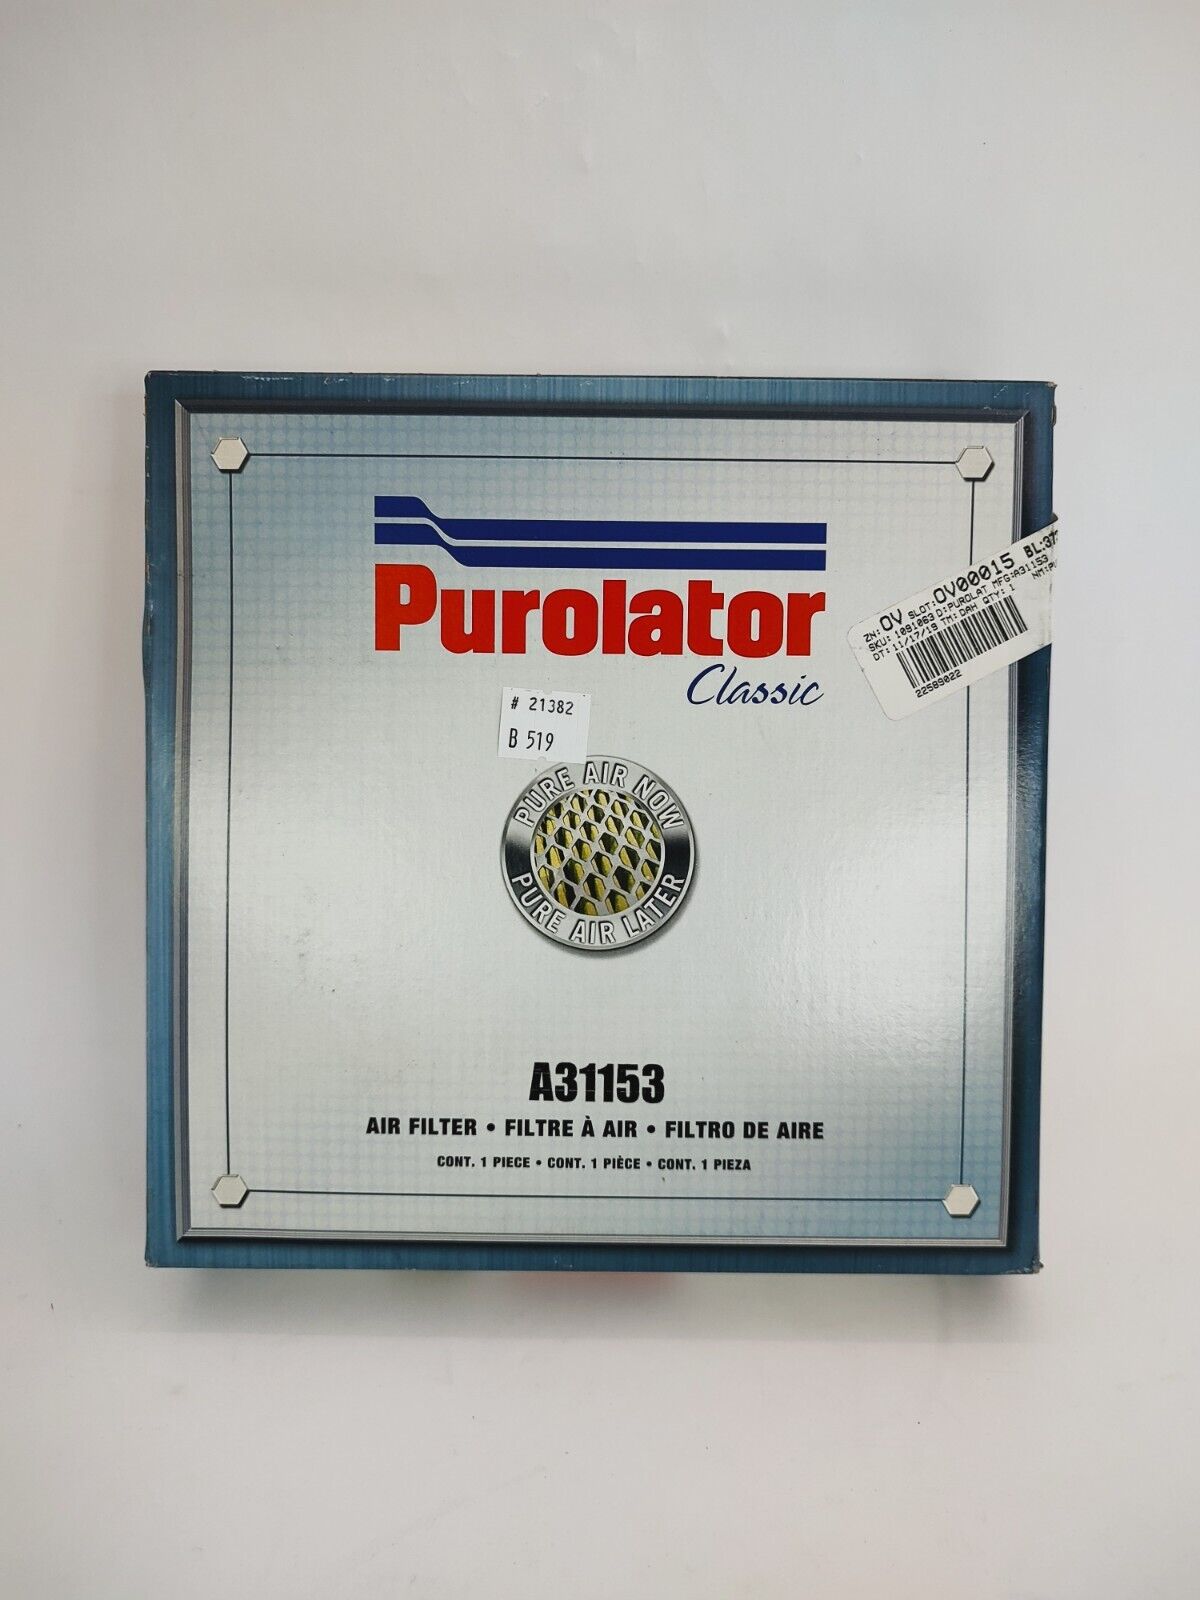 Purolator Classic A31153 Air Filter